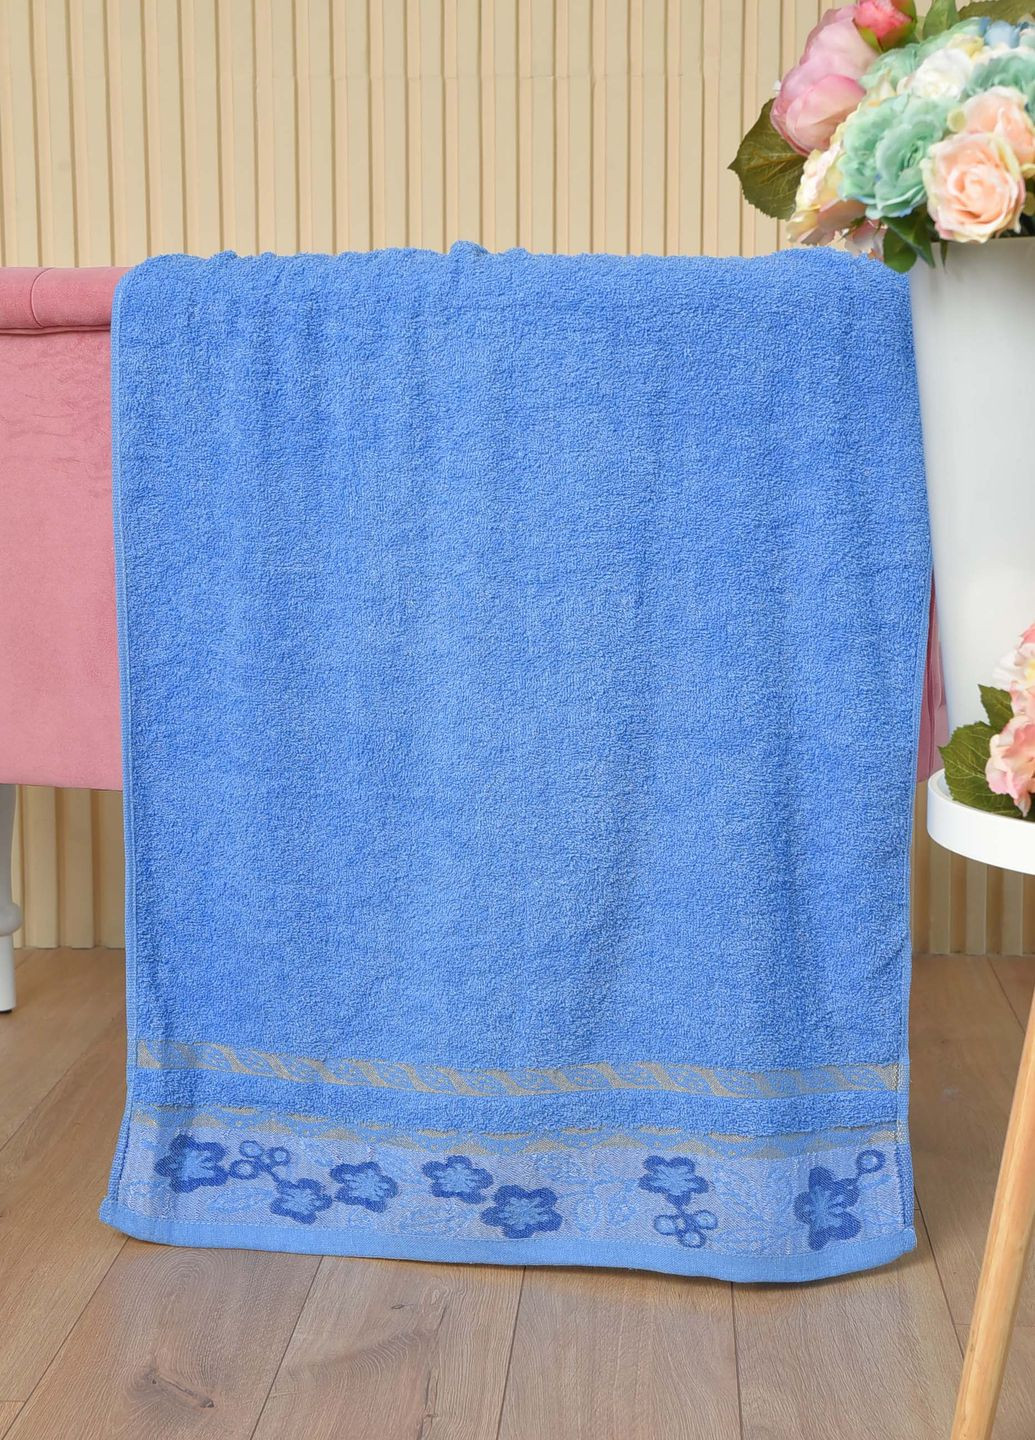 Let's Shop полотенце банное махровое синего цвета однотонный синий производство - Турция